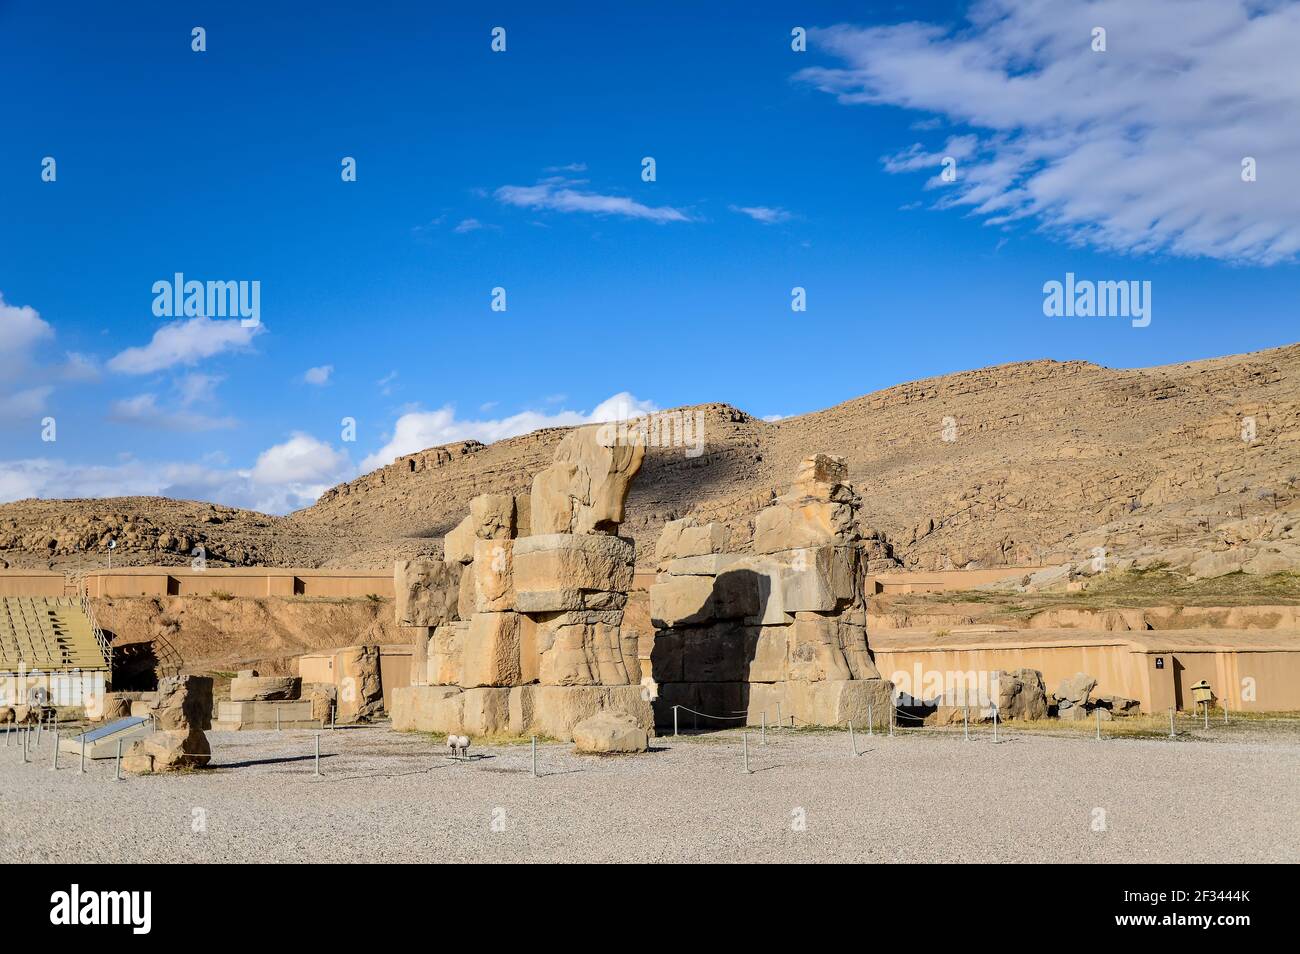 Puerta inacabada en las ruinas de Persépolis, el antiguo capiral del imperio persa, situado cerca de Shiraz, Irán Foto de stock